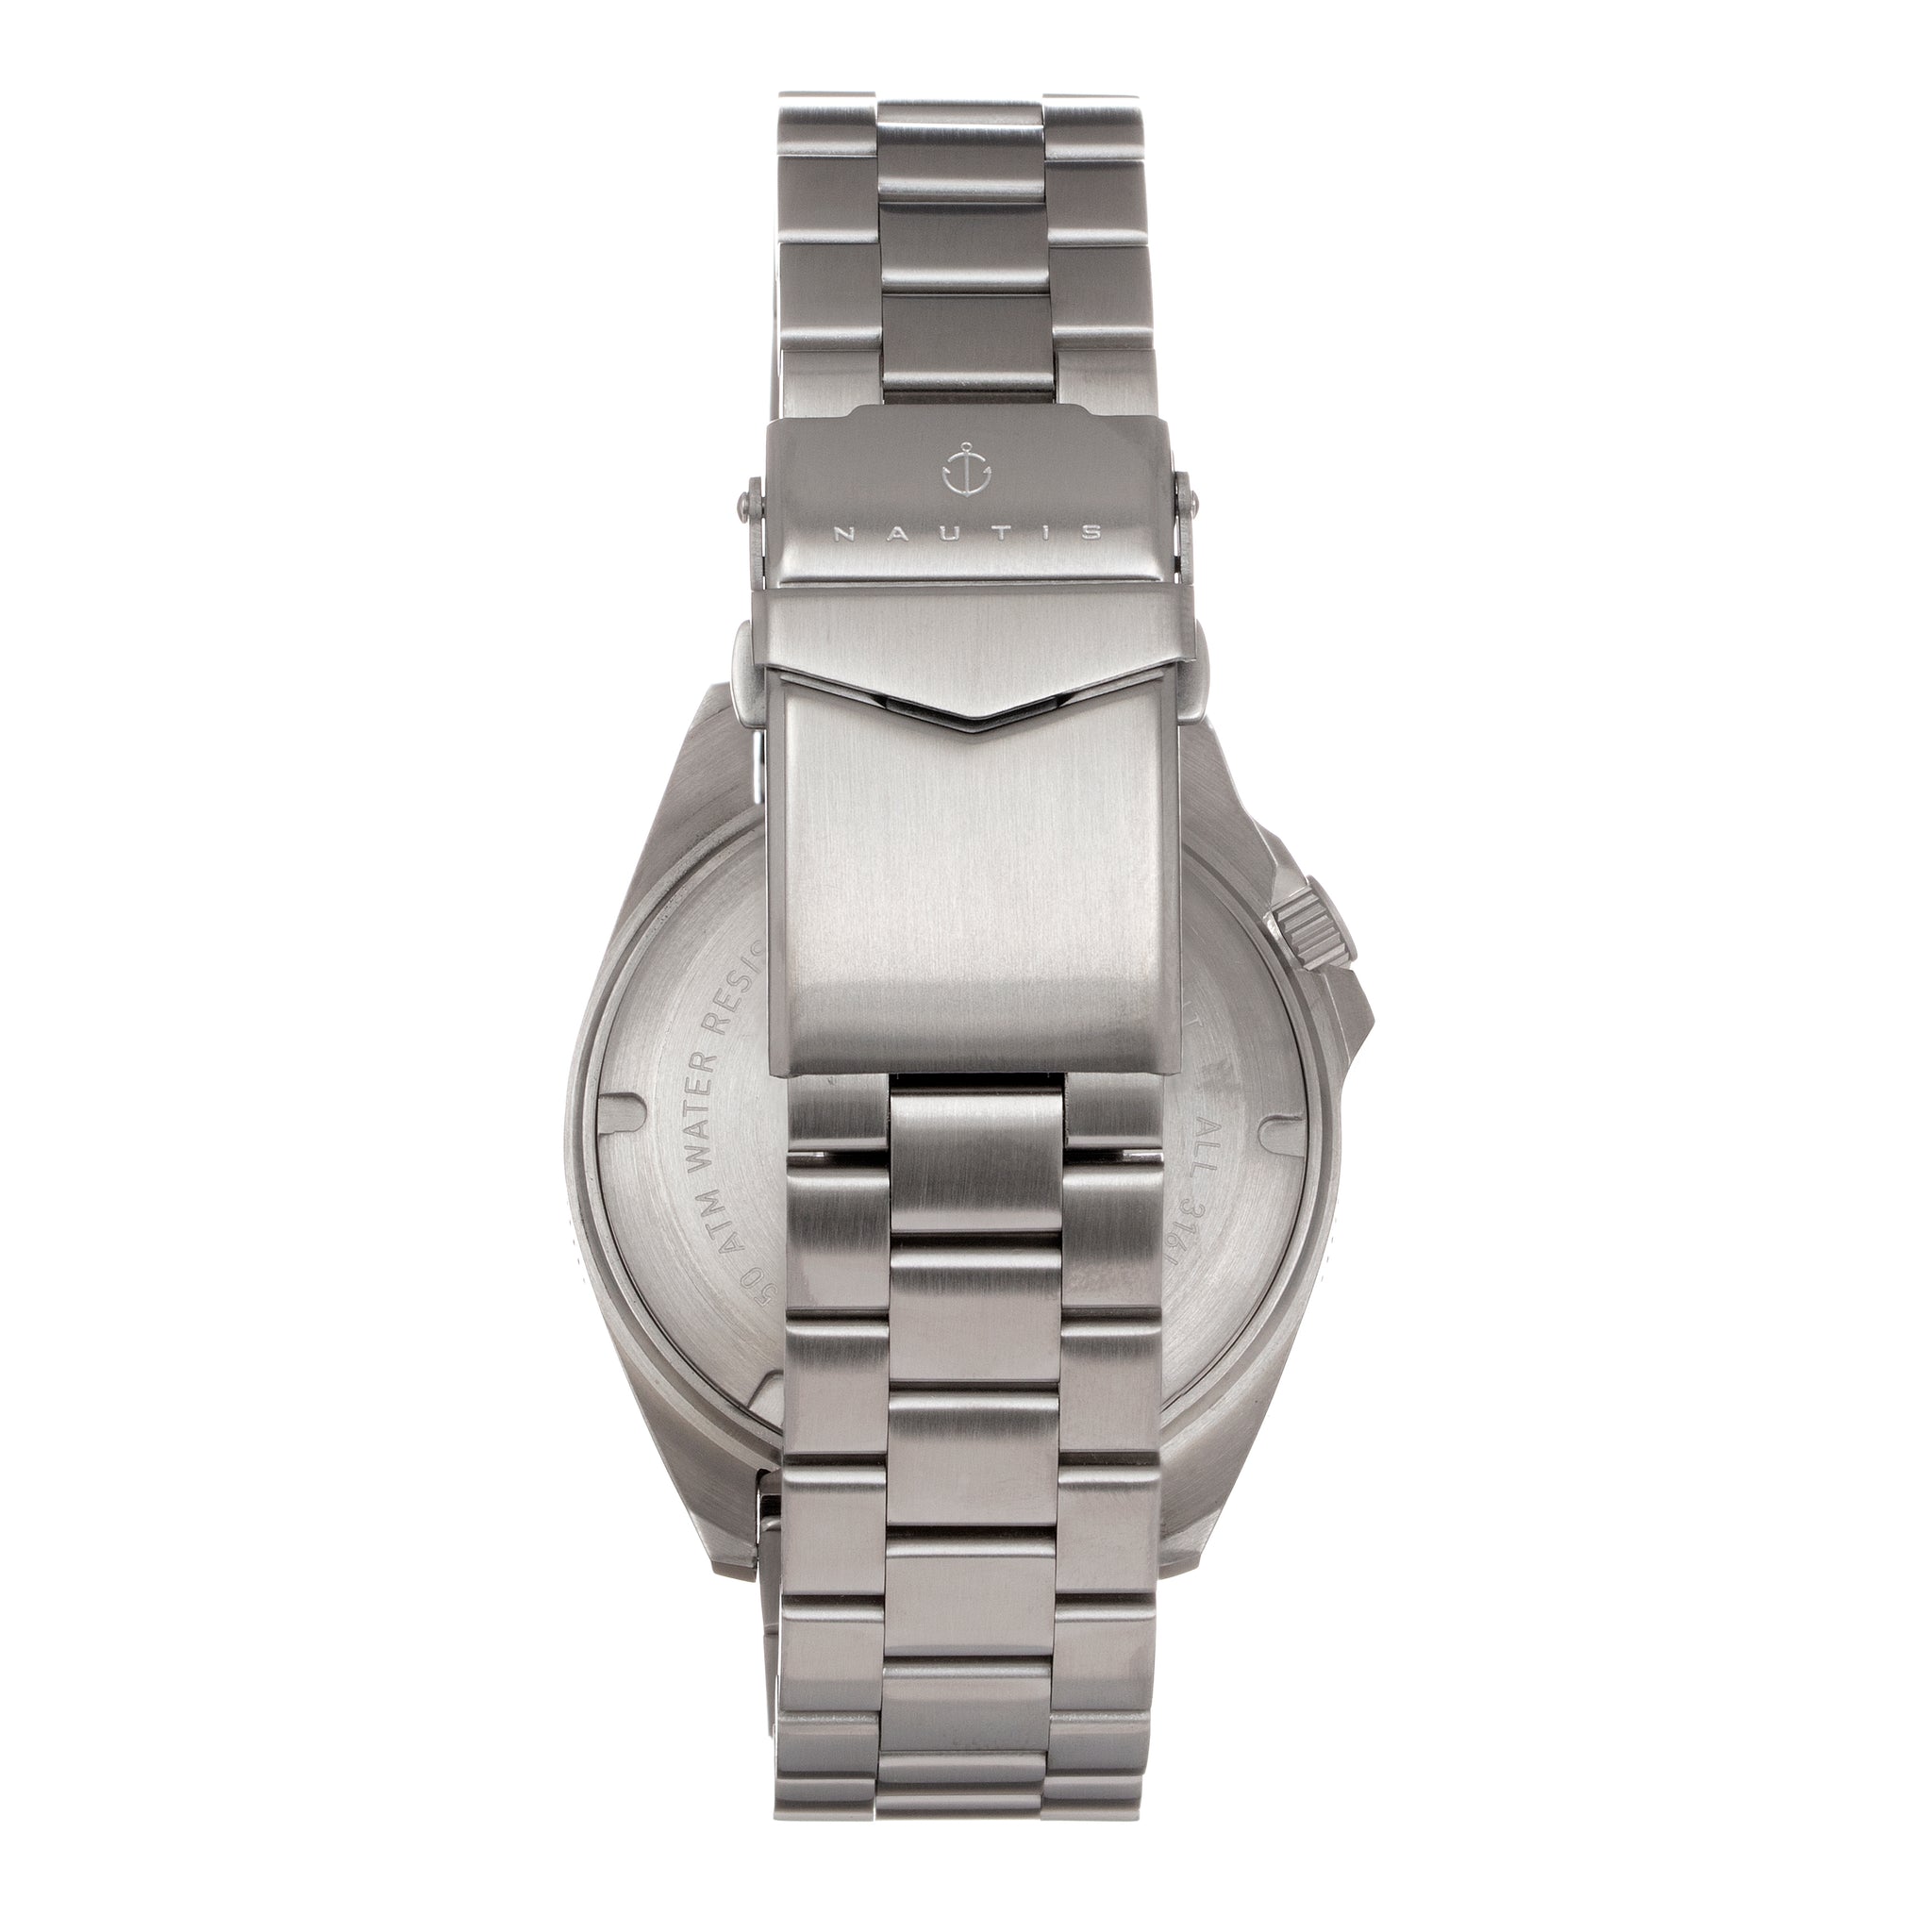 Nautis Global Dive Bracelet Watch w/Date - Grey - 18093G-B